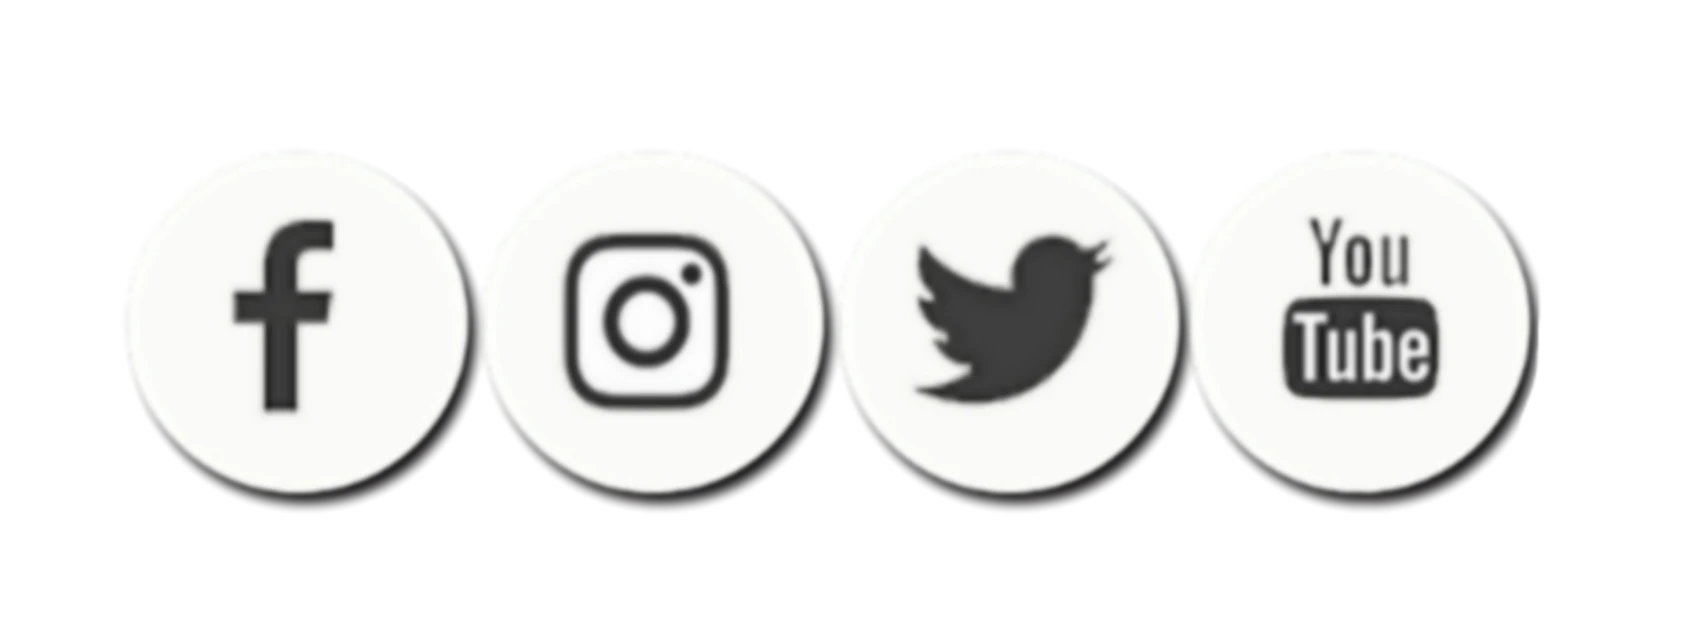 Facebook Instagram YouTube logo PNG Высококачественное изображение